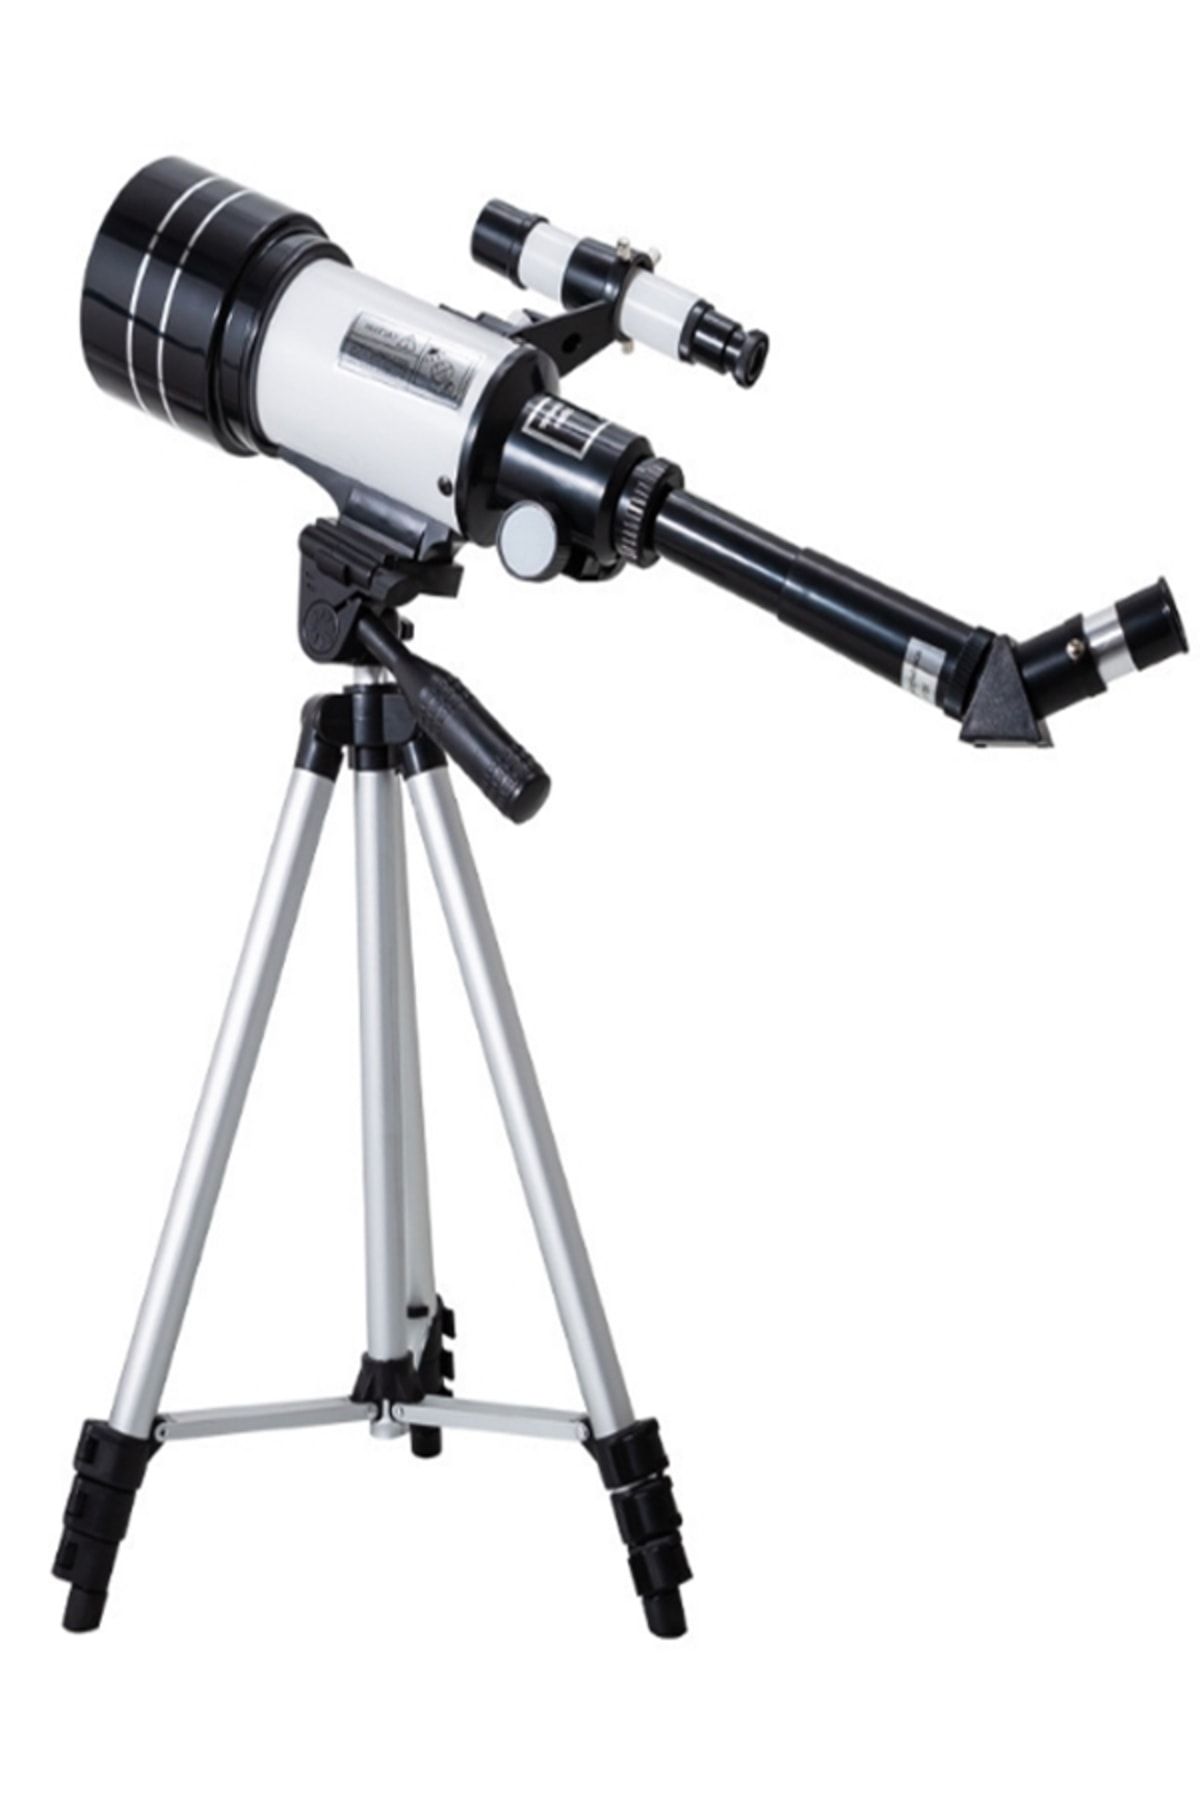 gaman Profesyonel Kara Ve Gökyüzü Teleskop 150x Yakınlaştırma 70mm Mercek